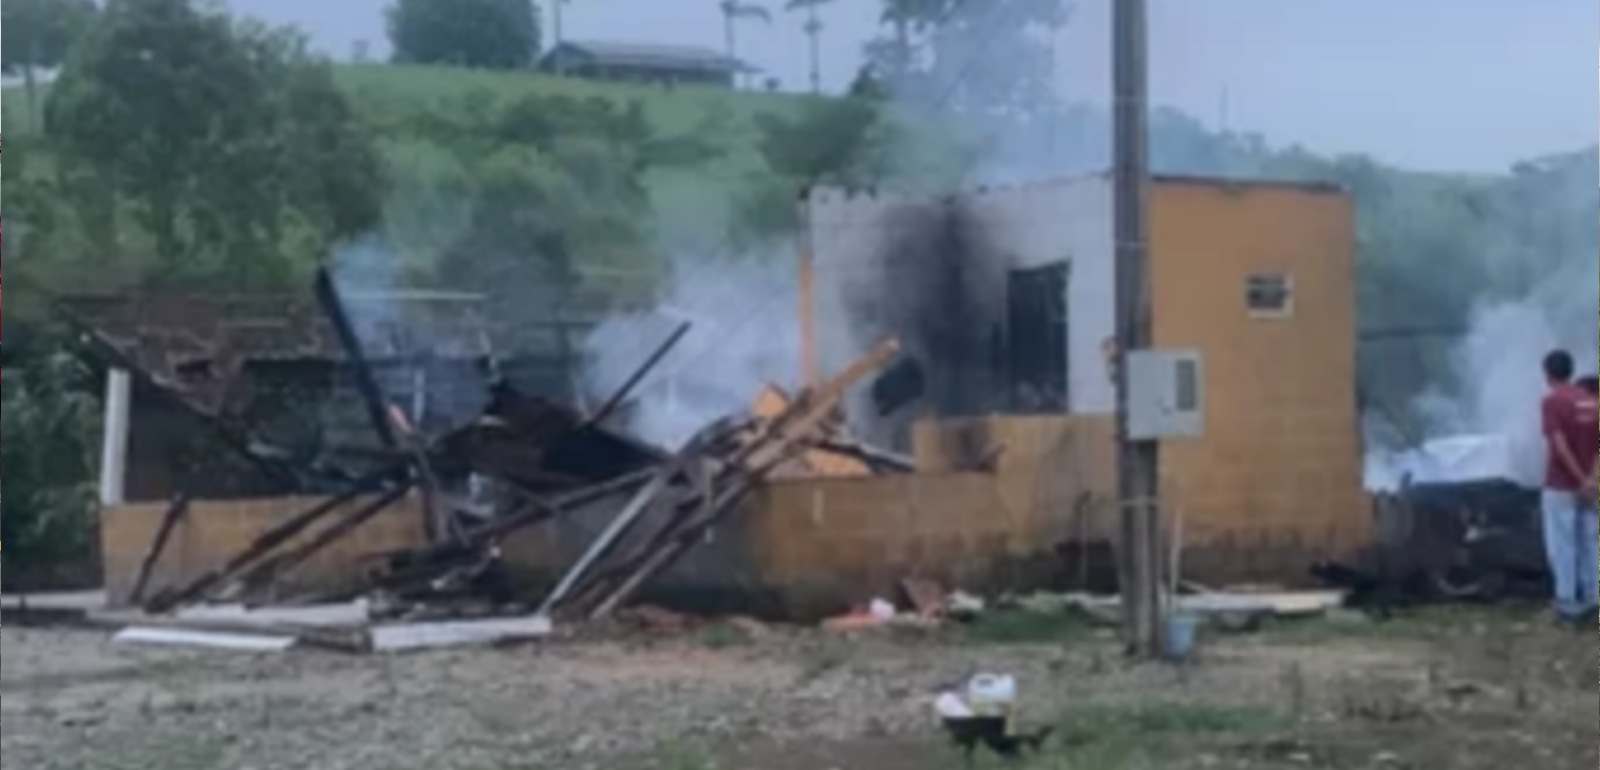 Família perde tudo após incêndio em residência, em Pouso Redondo